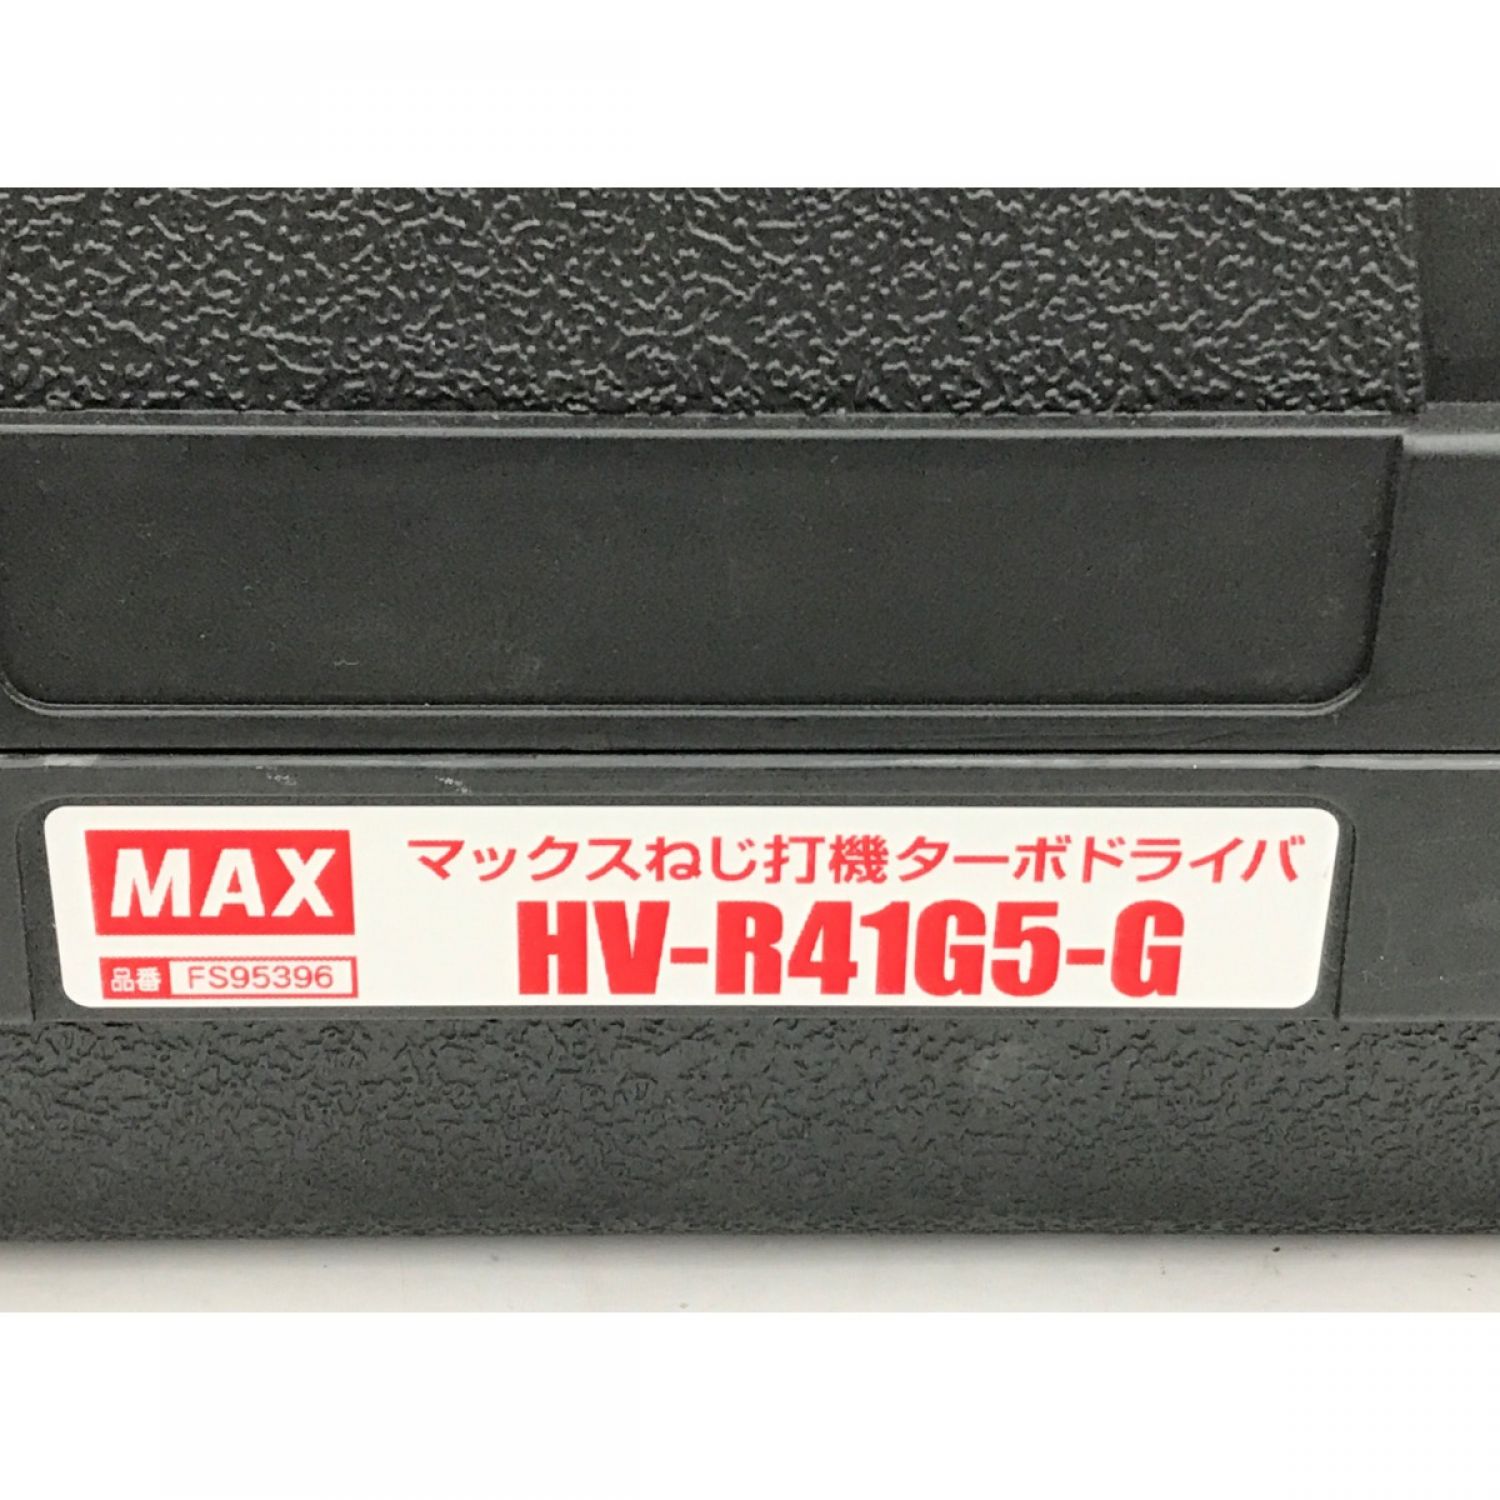 マックス/MAXエア釘打ち機HV-R41G5